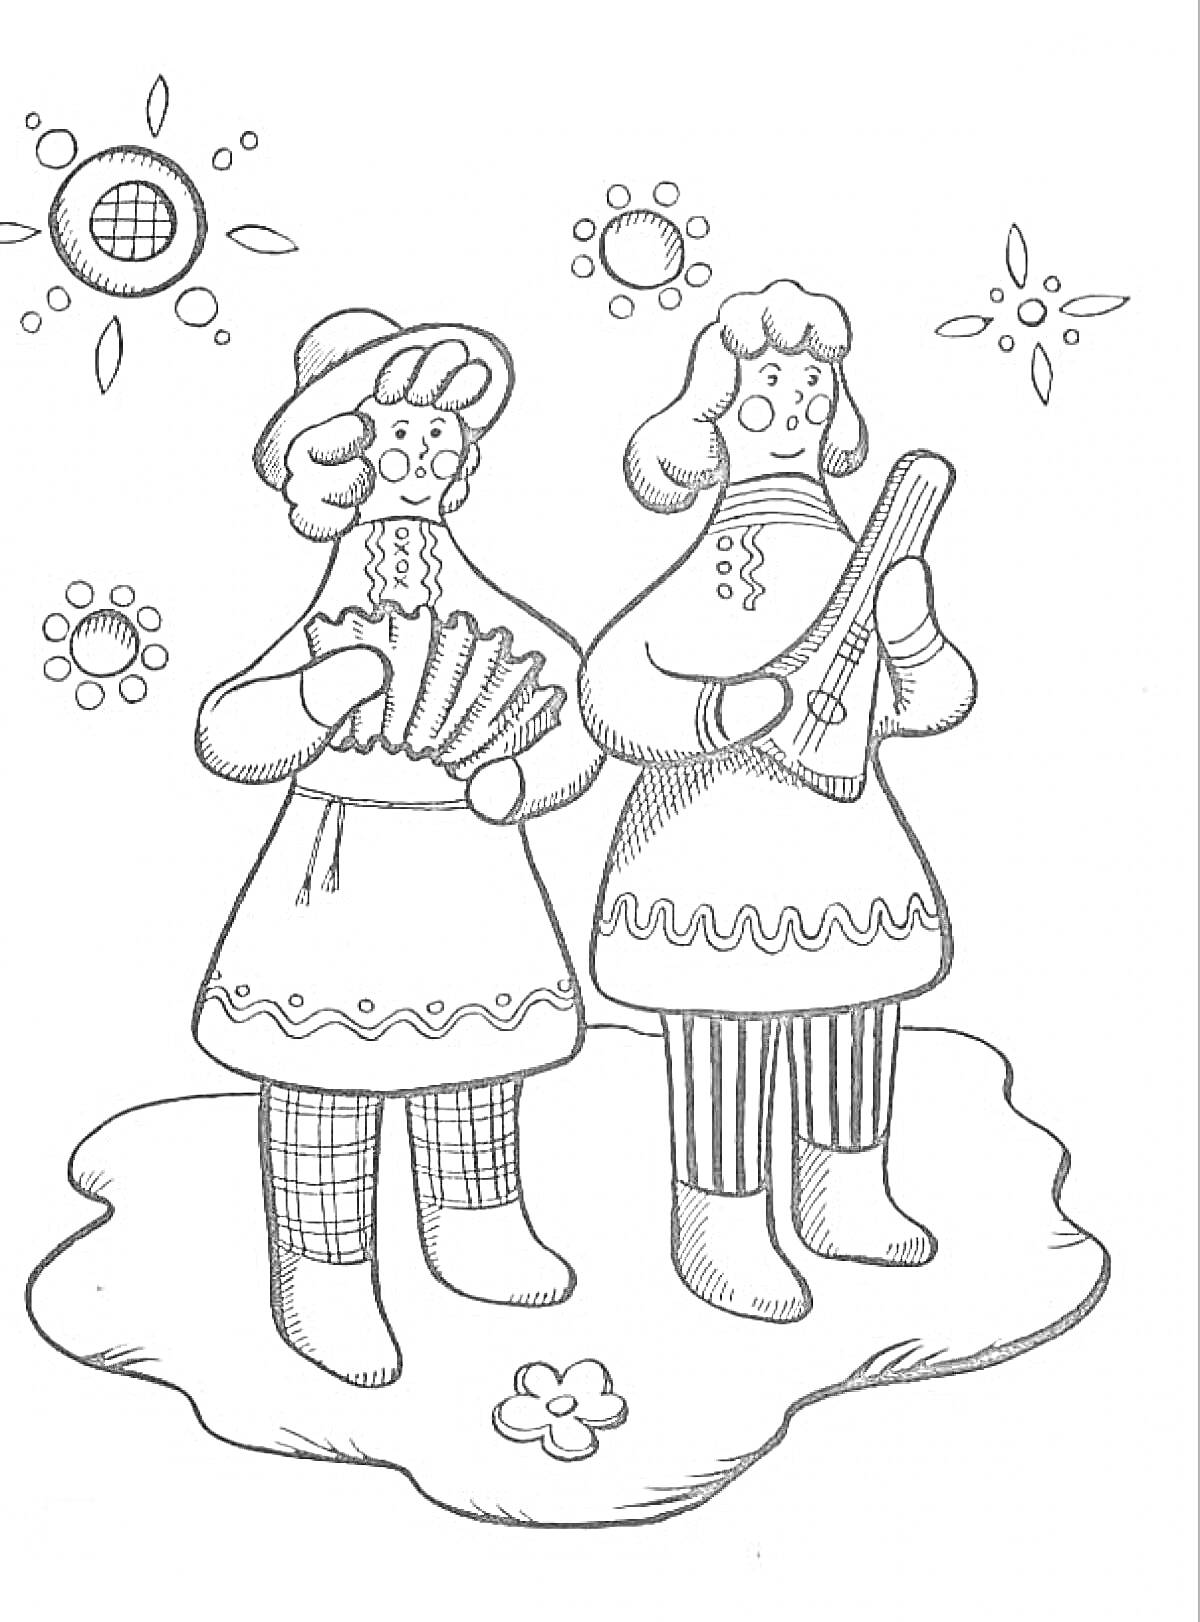 Дымковская игрушка с двумя женщинами в традиционной одежде, держащими музыкальные инструменты на фоне цветков и солнца